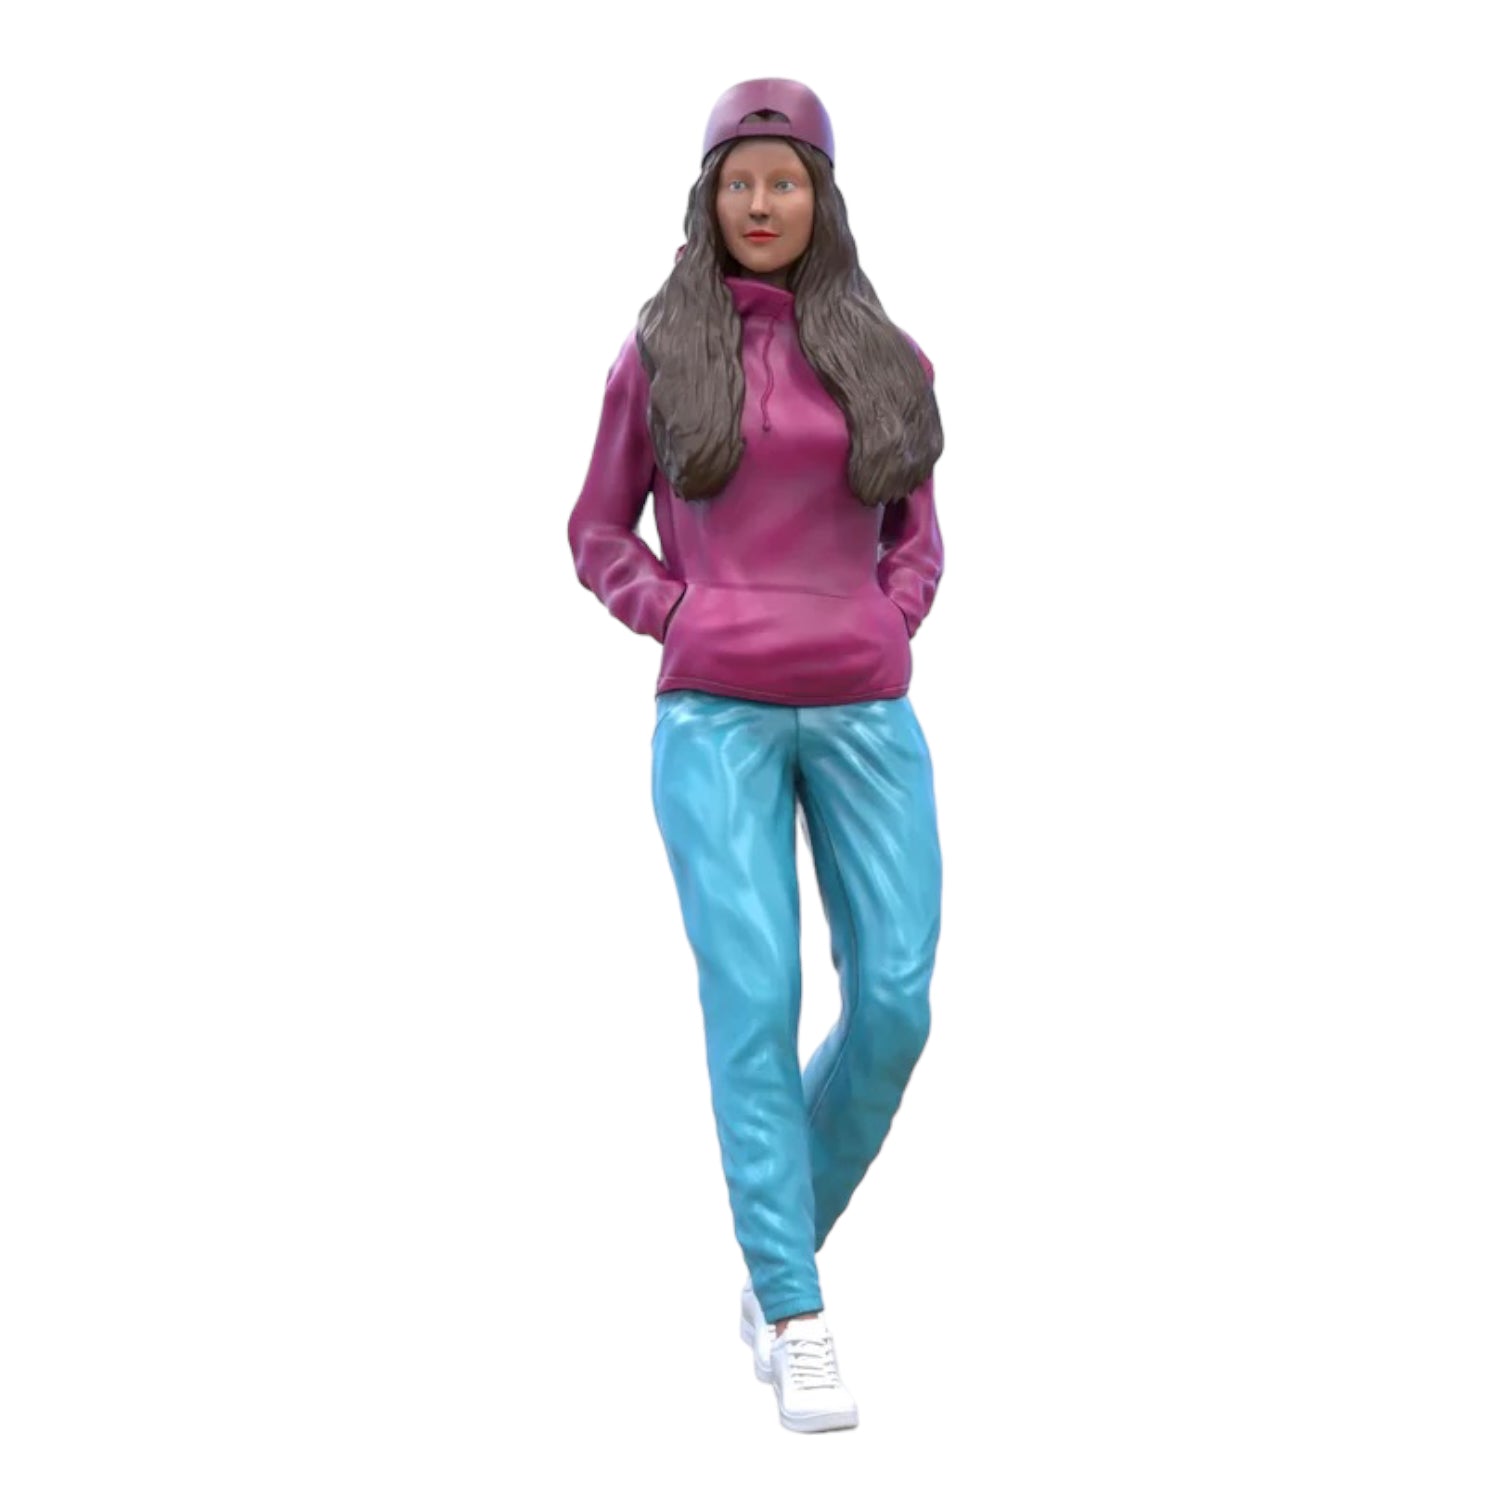 Produktfoto Diorama und Modellbau Miniatur Figur: Frau mit Hoodie | Hip Hopperin